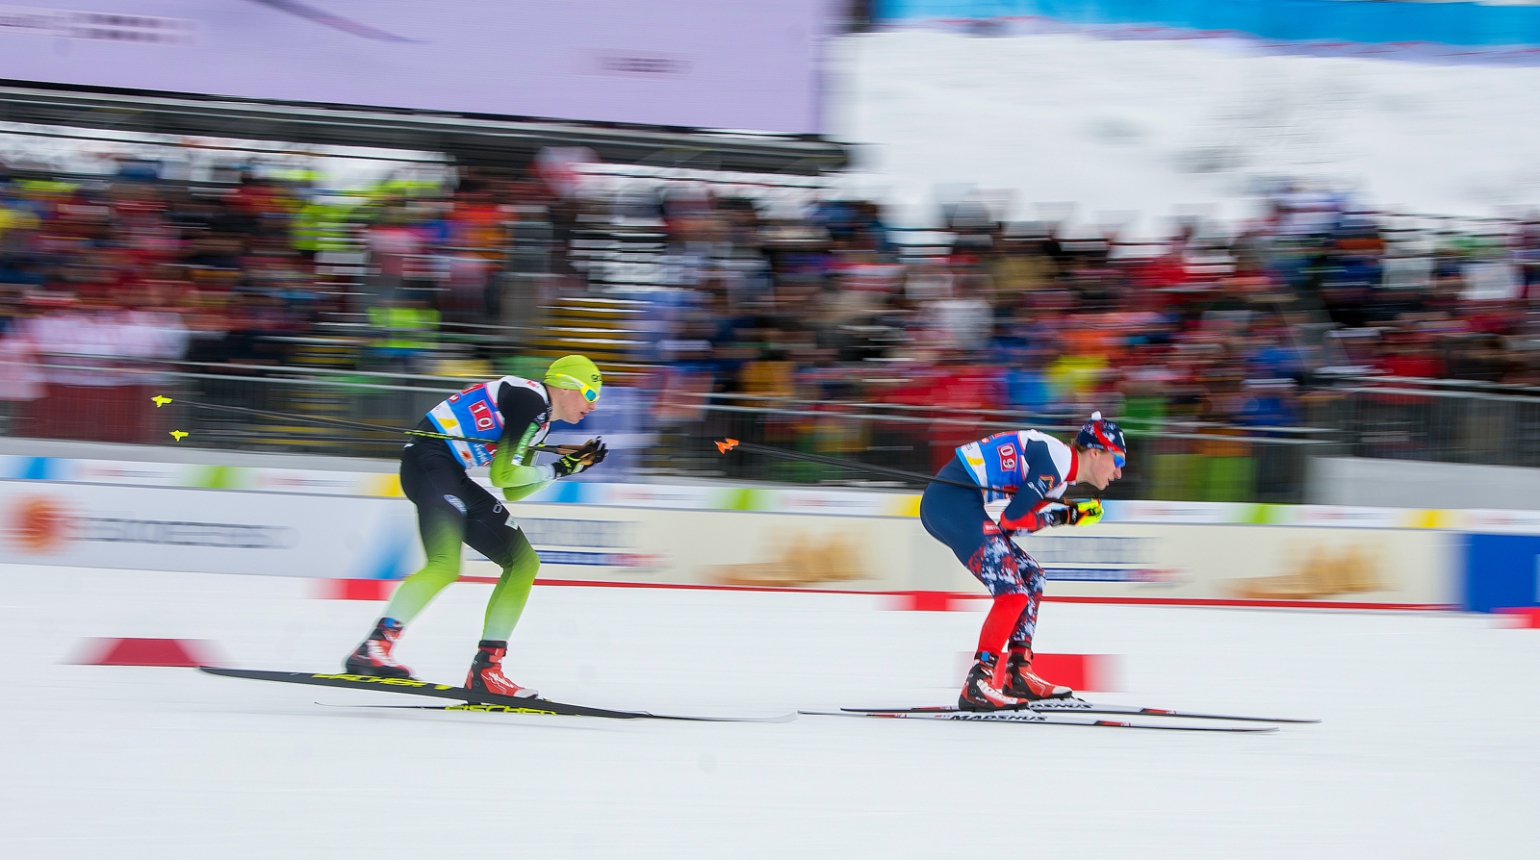 Začíná mistrovství světa klasických lyžařů. V Oberstdorfu se představí 25 českých závodníků